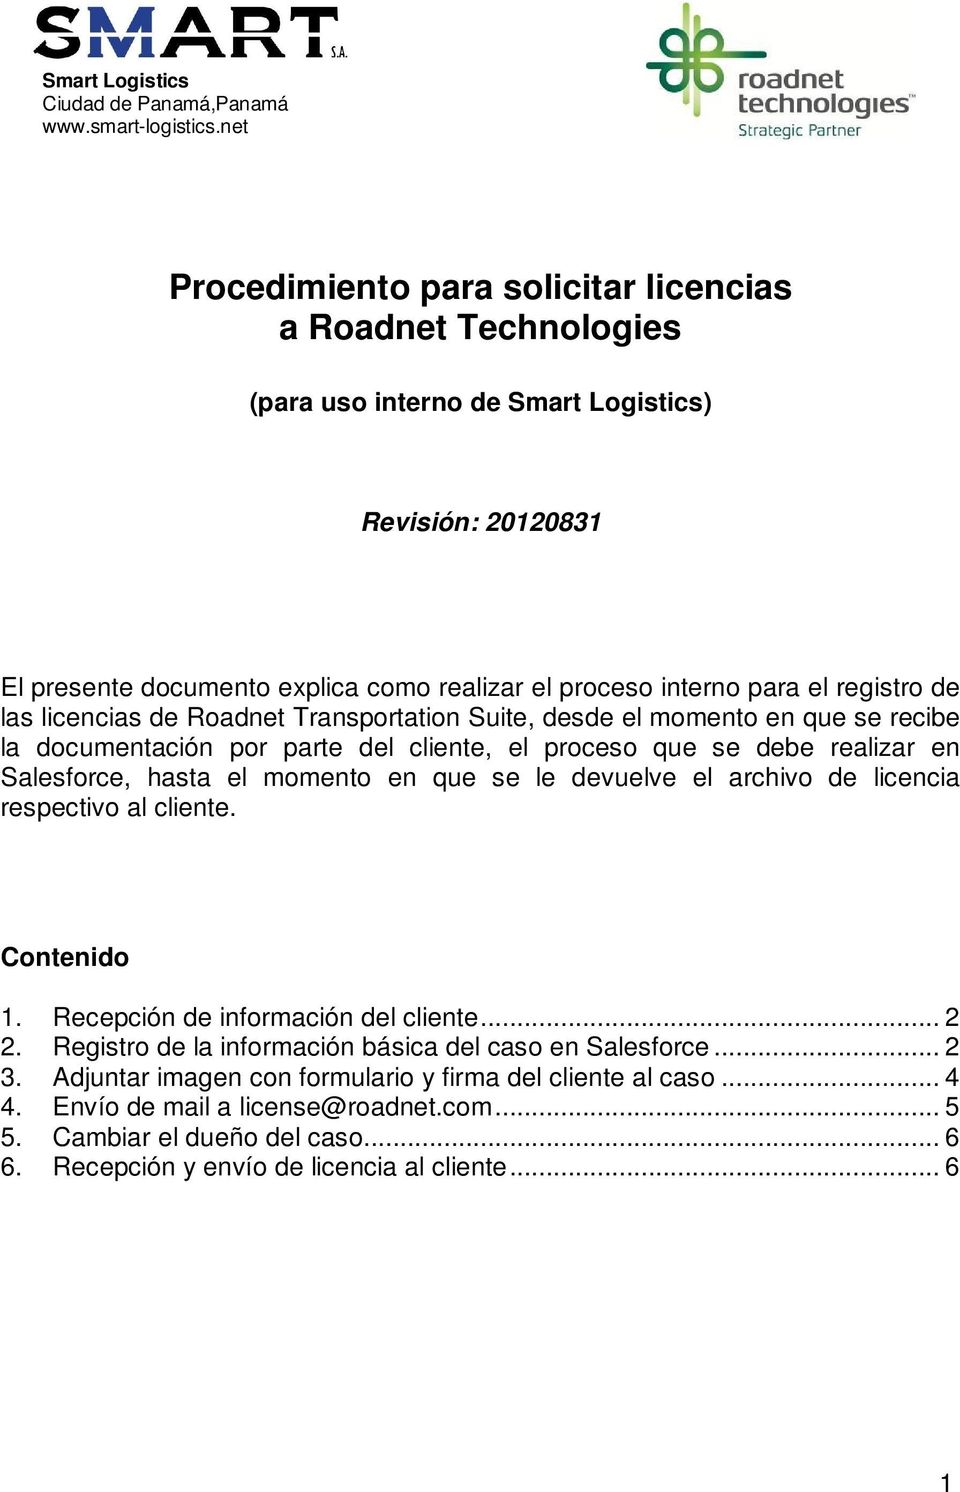 registro de las licencias de Roadnet Transportation Suite, desde el momento en que se recibe la documentación por parte del cliente, el proceso que se debe realizar en Salesforce, hasta el momento en